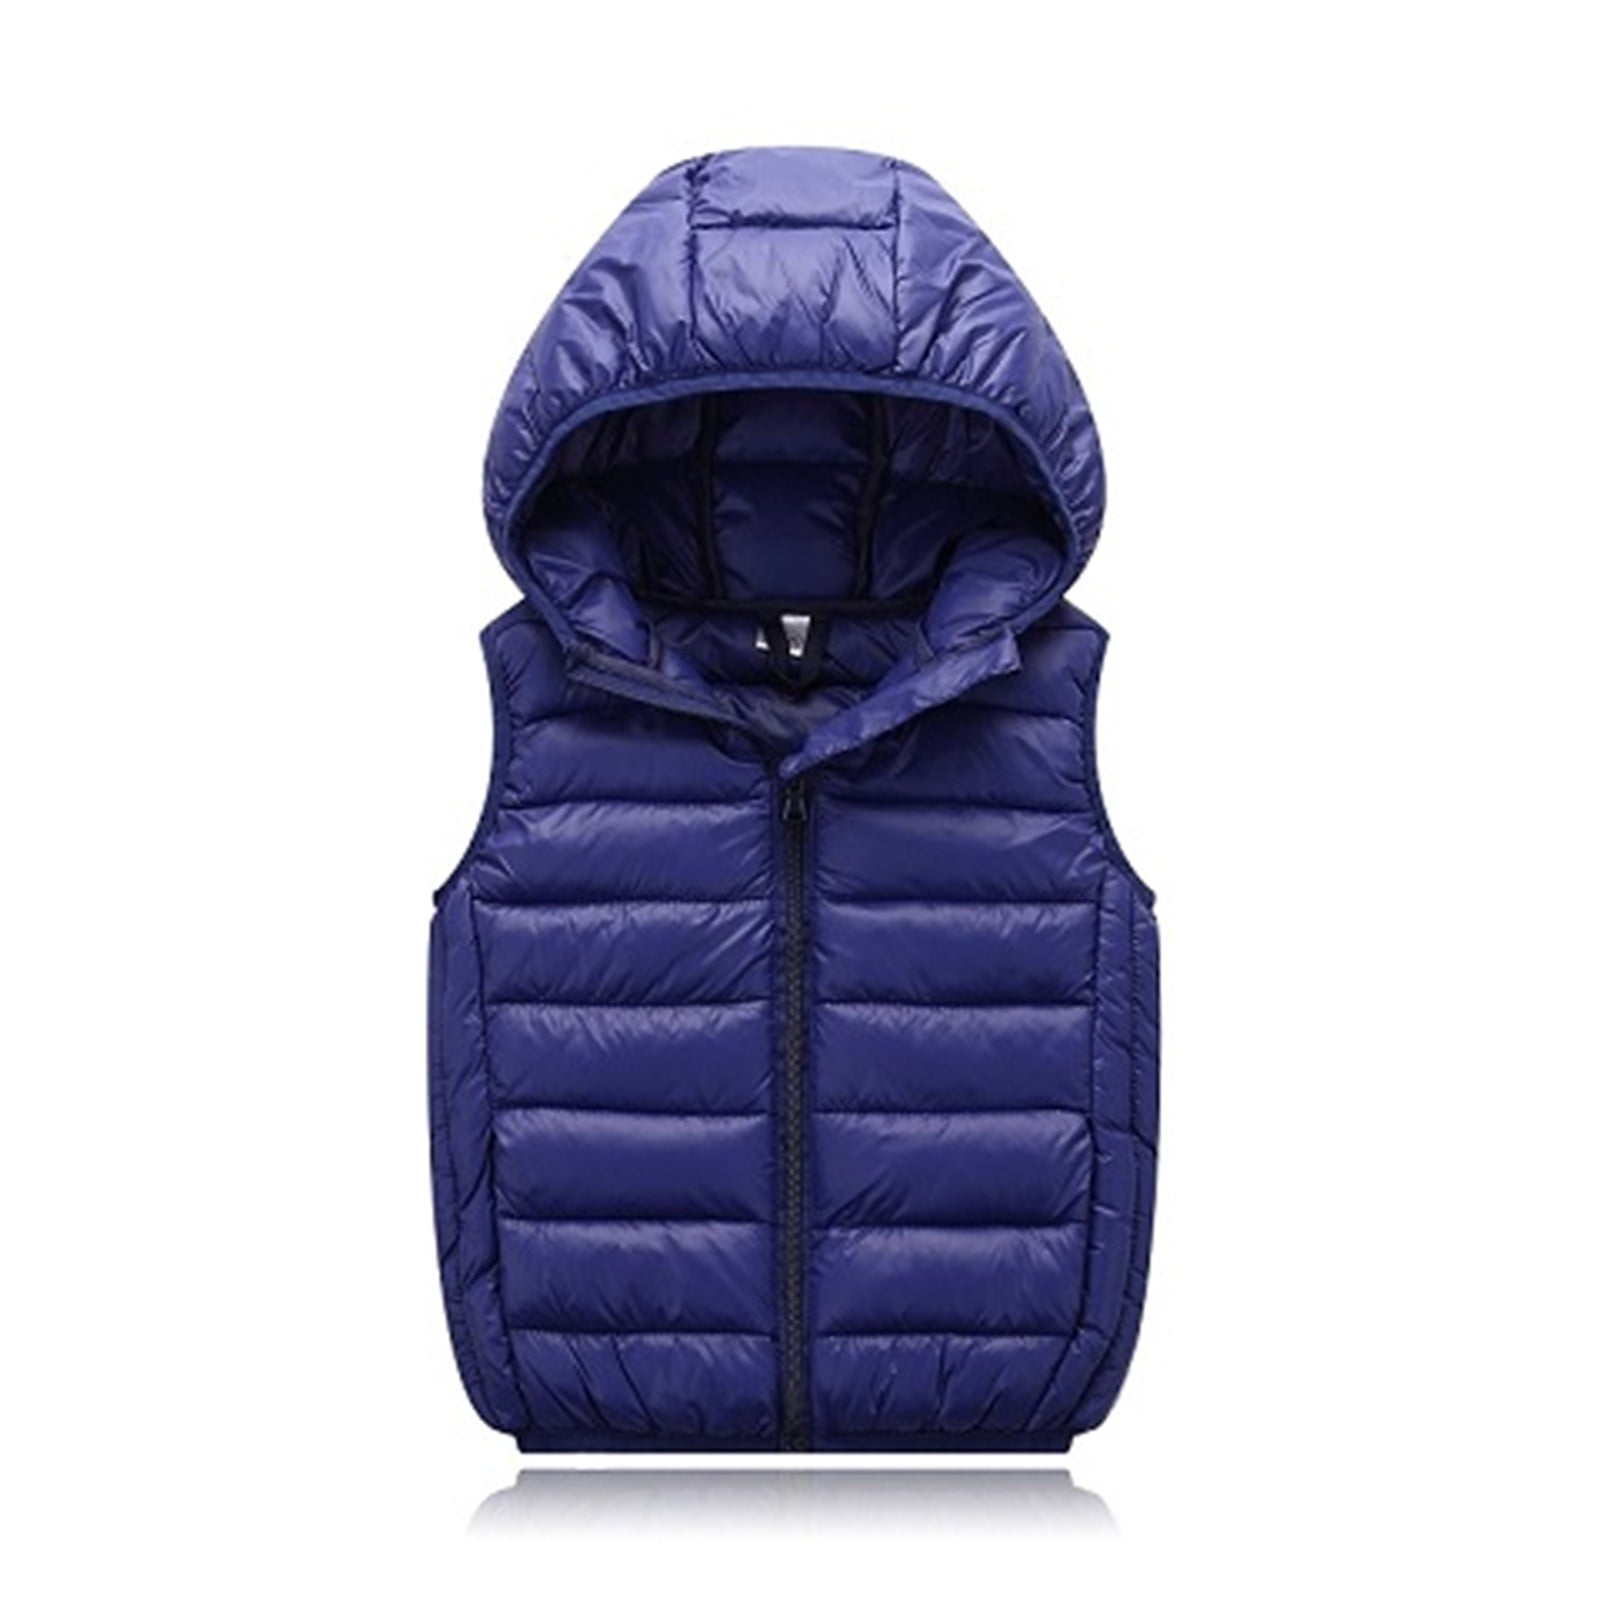 Aayomet Winter Coats For Boys Clothes Kids Warm Coat Children Coat ...